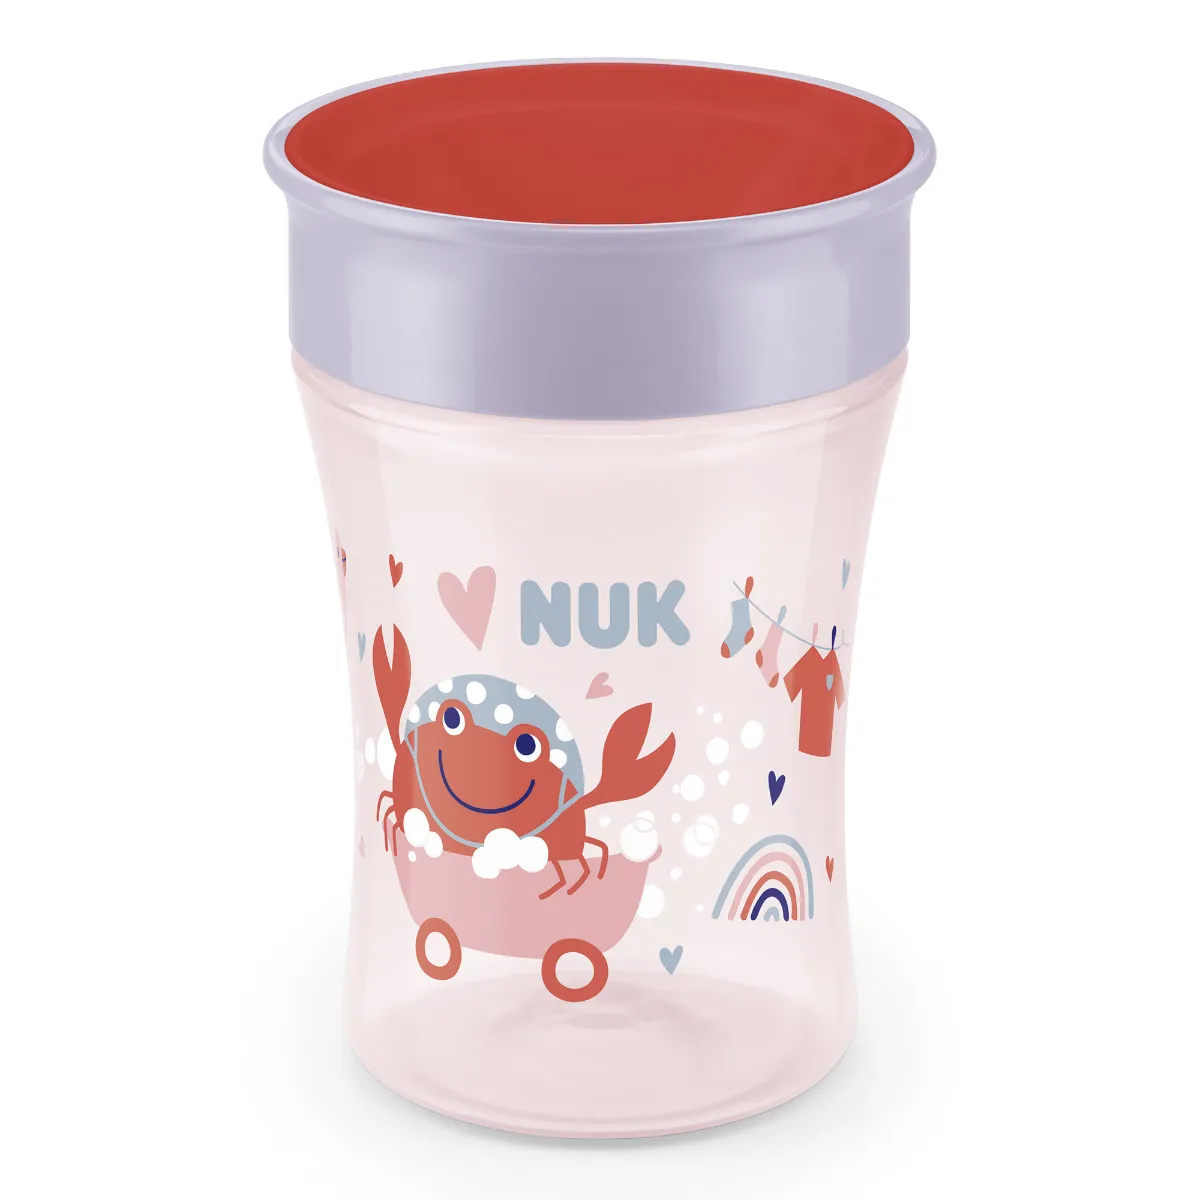 NUK Magic Cup 1×1 ks, 230 ml, detský pohár